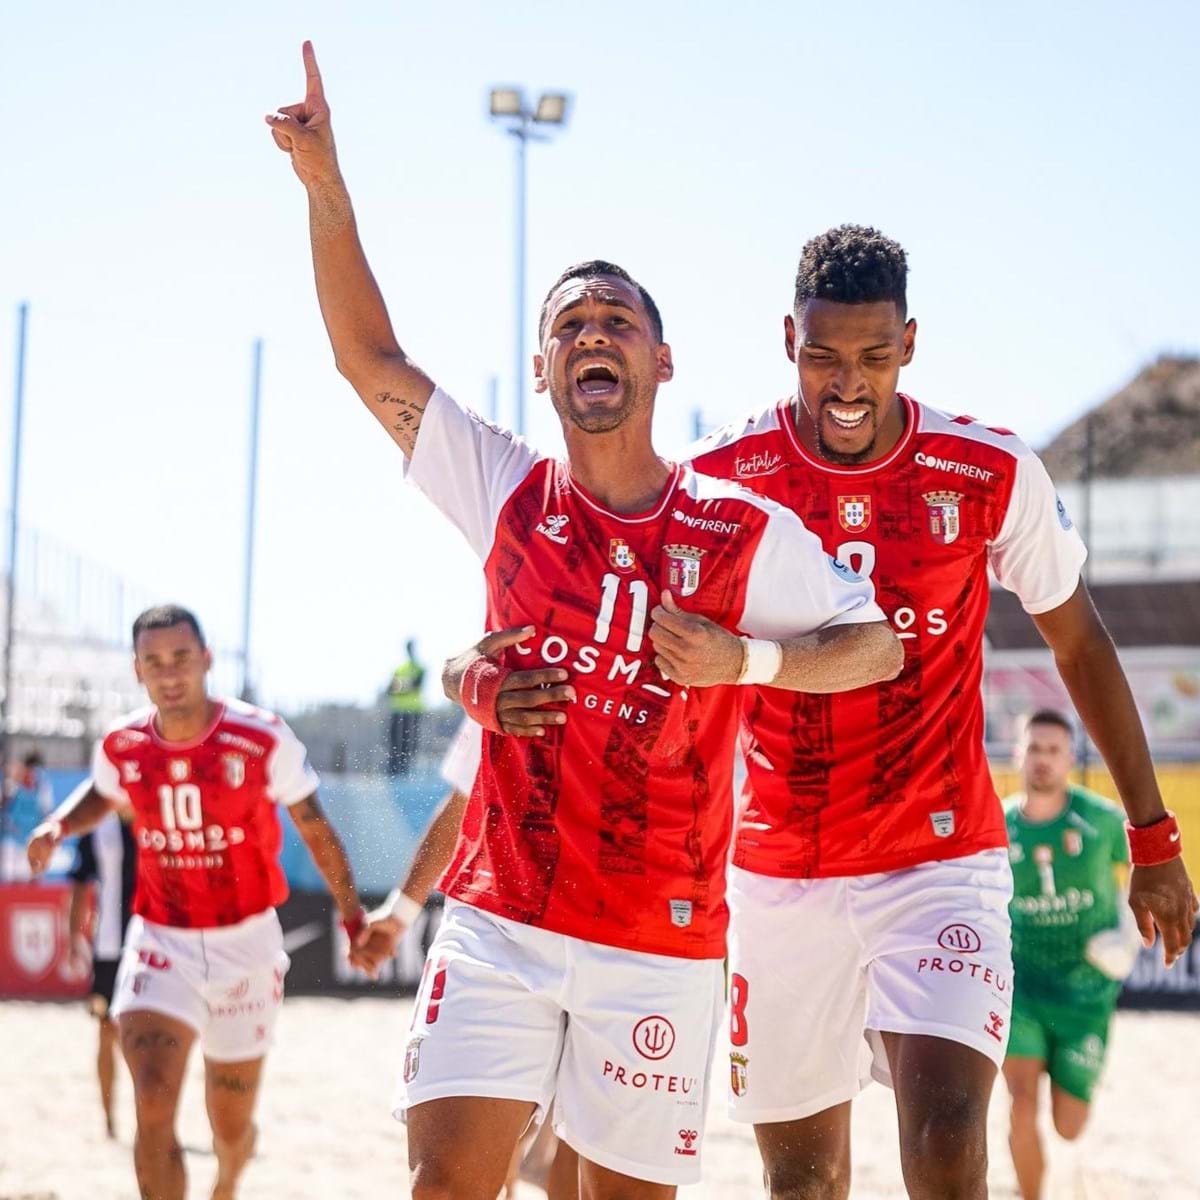 Futebol de Praia Portugal - A Jornada 3 do Campeonato Elite disputa-se em  Buarcos! ⚽🏟 Confere todos os jogos de hoje. 👇 #futebolpraia #portugal  #figueiradafoz #FPF